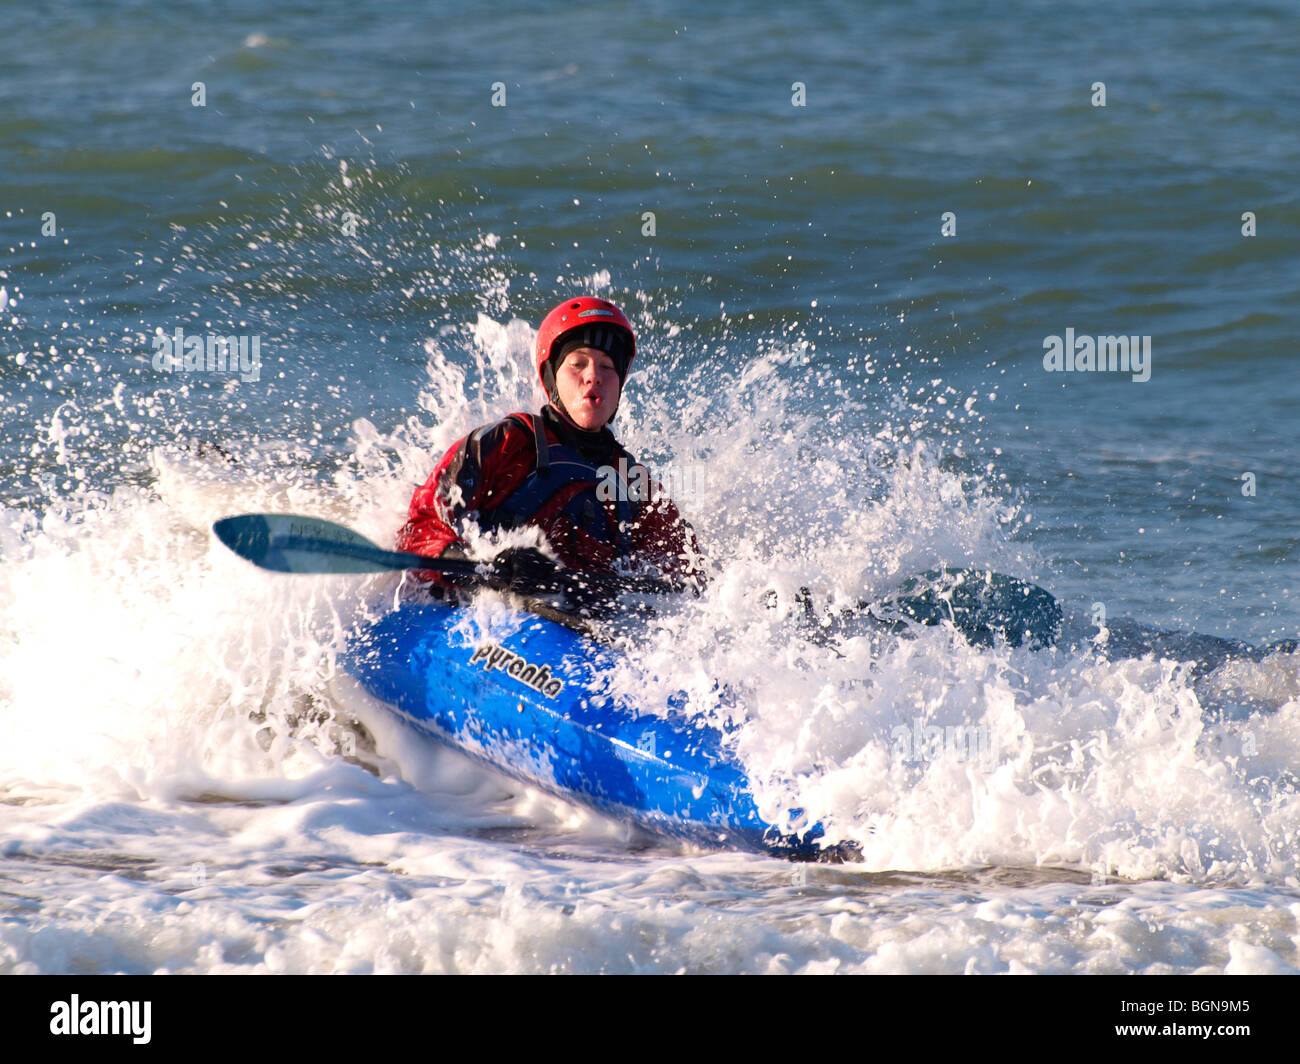 Kayakiste de surf en action Banque D'Images